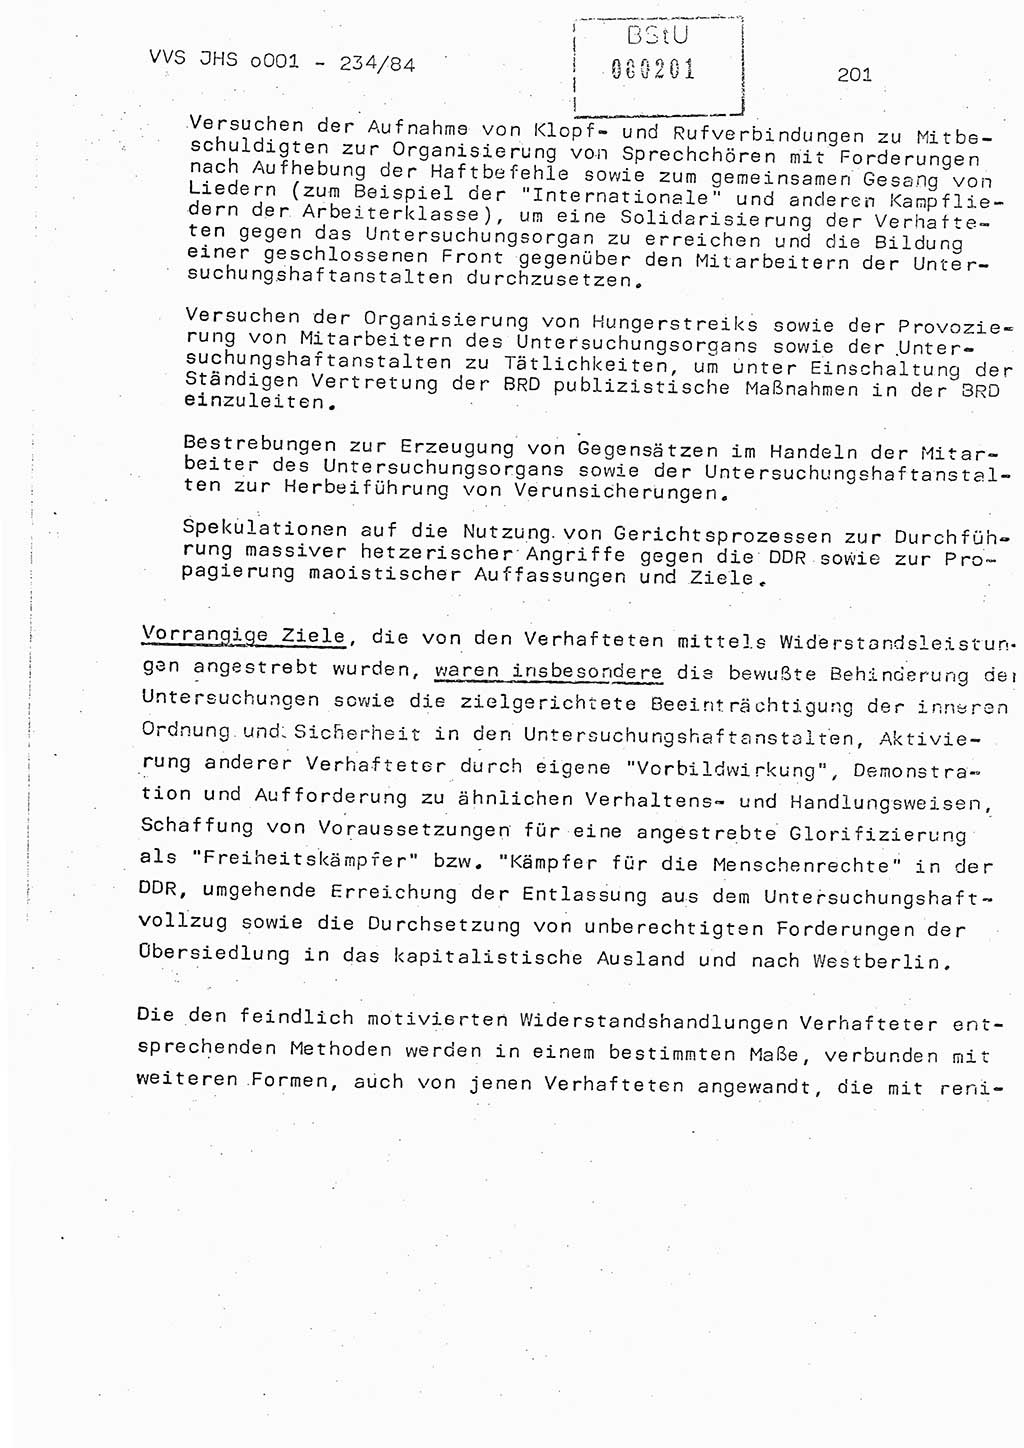 Dissertation Oberst Siegfried Rataizick (Abt. ⅩⅣ), Oberstleutnant Volkmar Heinz (Abt. ⅩⅣ), Oberstleutnant Werner Stein (HA Ⅸ), Hauptmann Heinz Conrad (JHS), Ministerium für Staatssicherheit (MfS) [Deutsche Demokratische Republik (DDR)], Juristische Hochschule (JHS), Vertrauliche Verschlußsache (VVS) o001-234/84, Potsdam 1984, Seite 201 (Diss. MfS DDR JHS VVS o001-234/84 1984, S. 201)